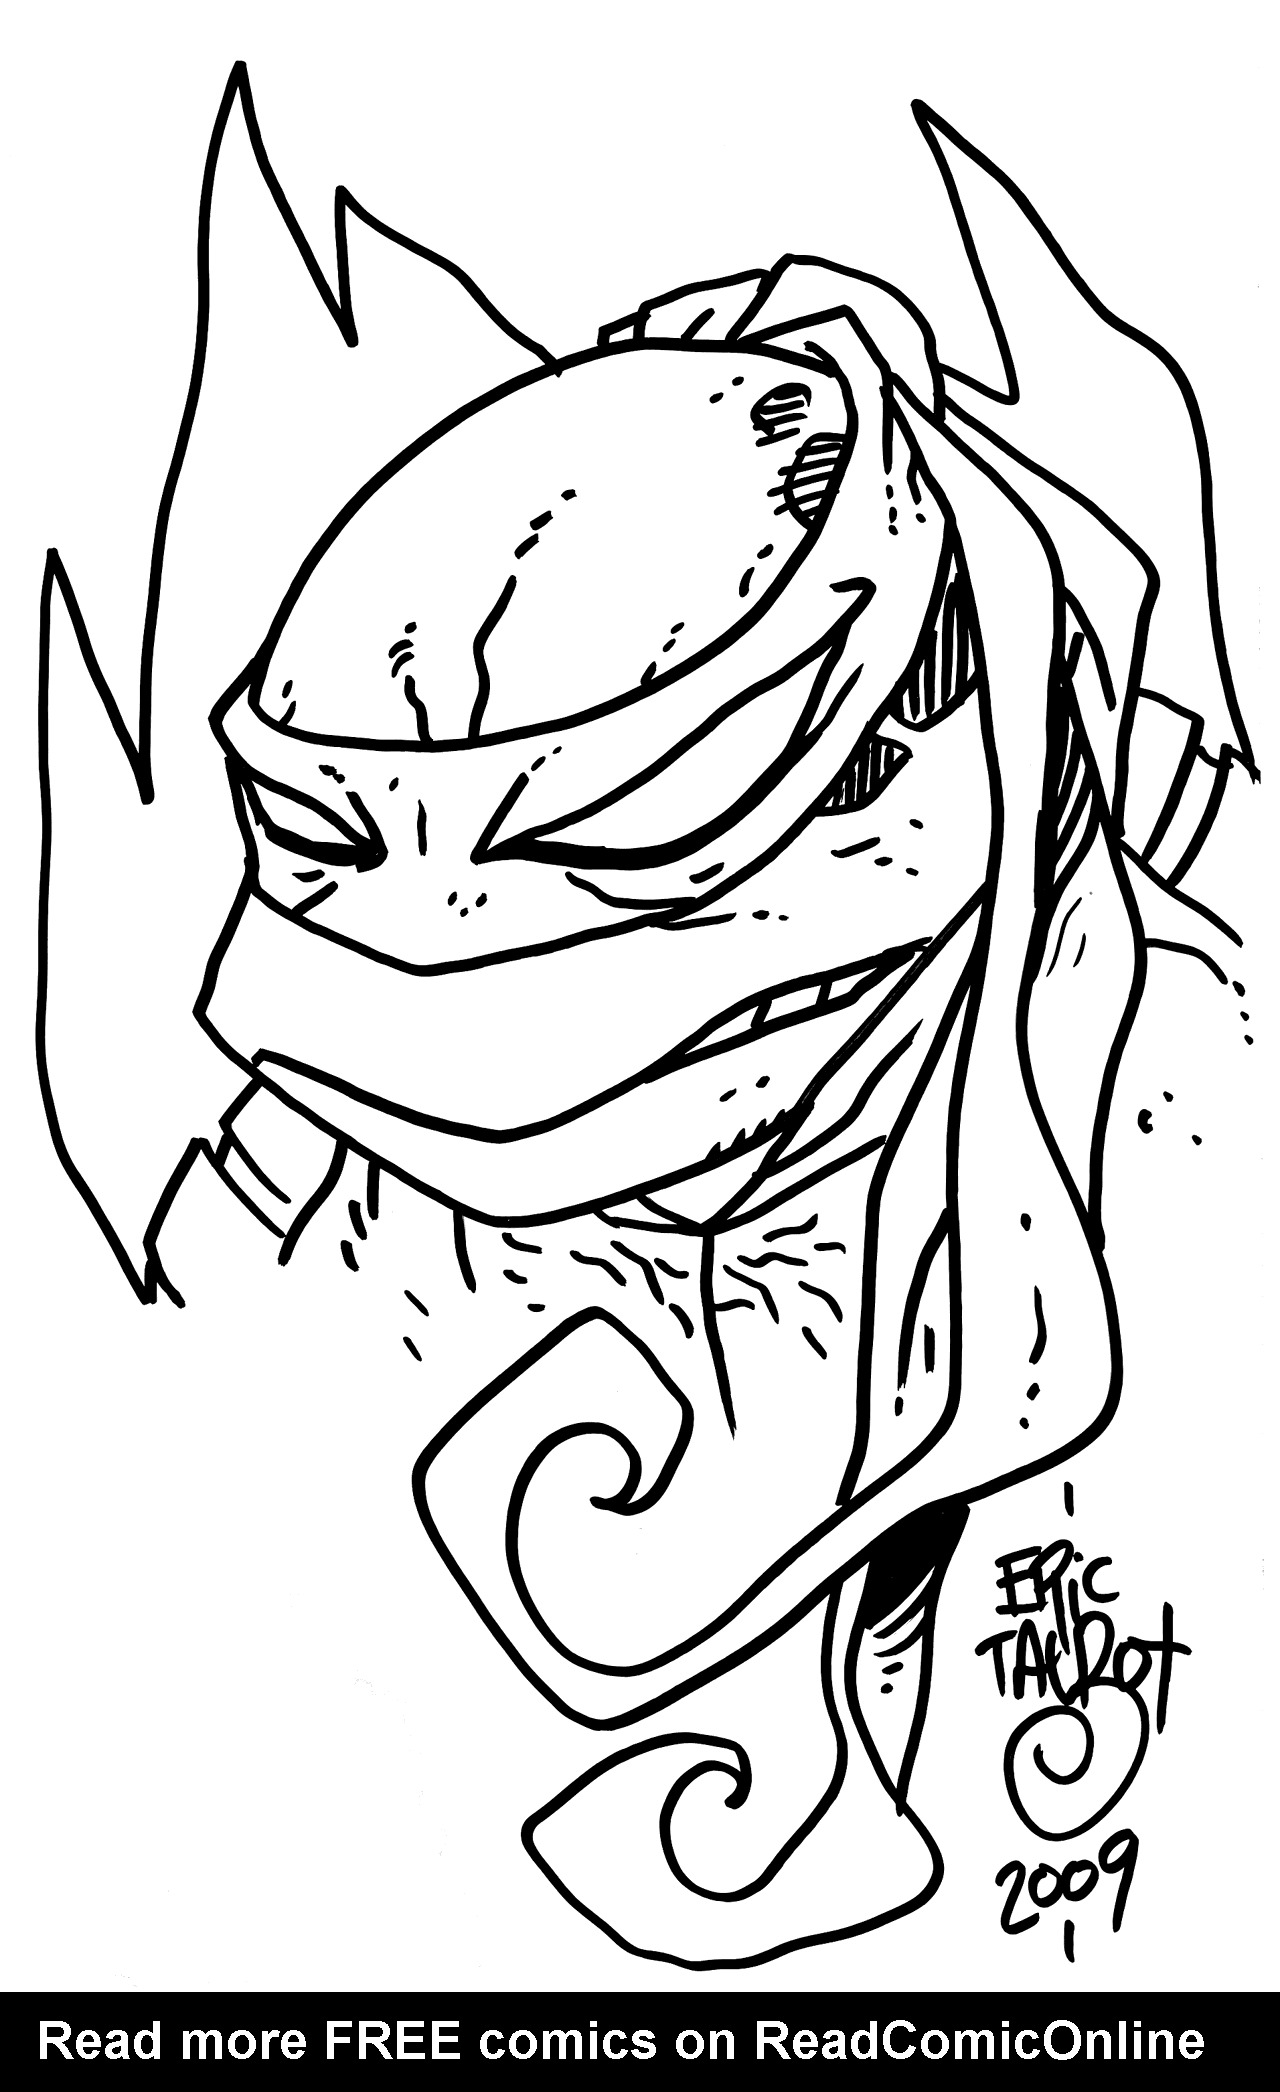 Read online TMNT: Teenage Mutant Ninja Turtles comic -  Issue #30 - 43